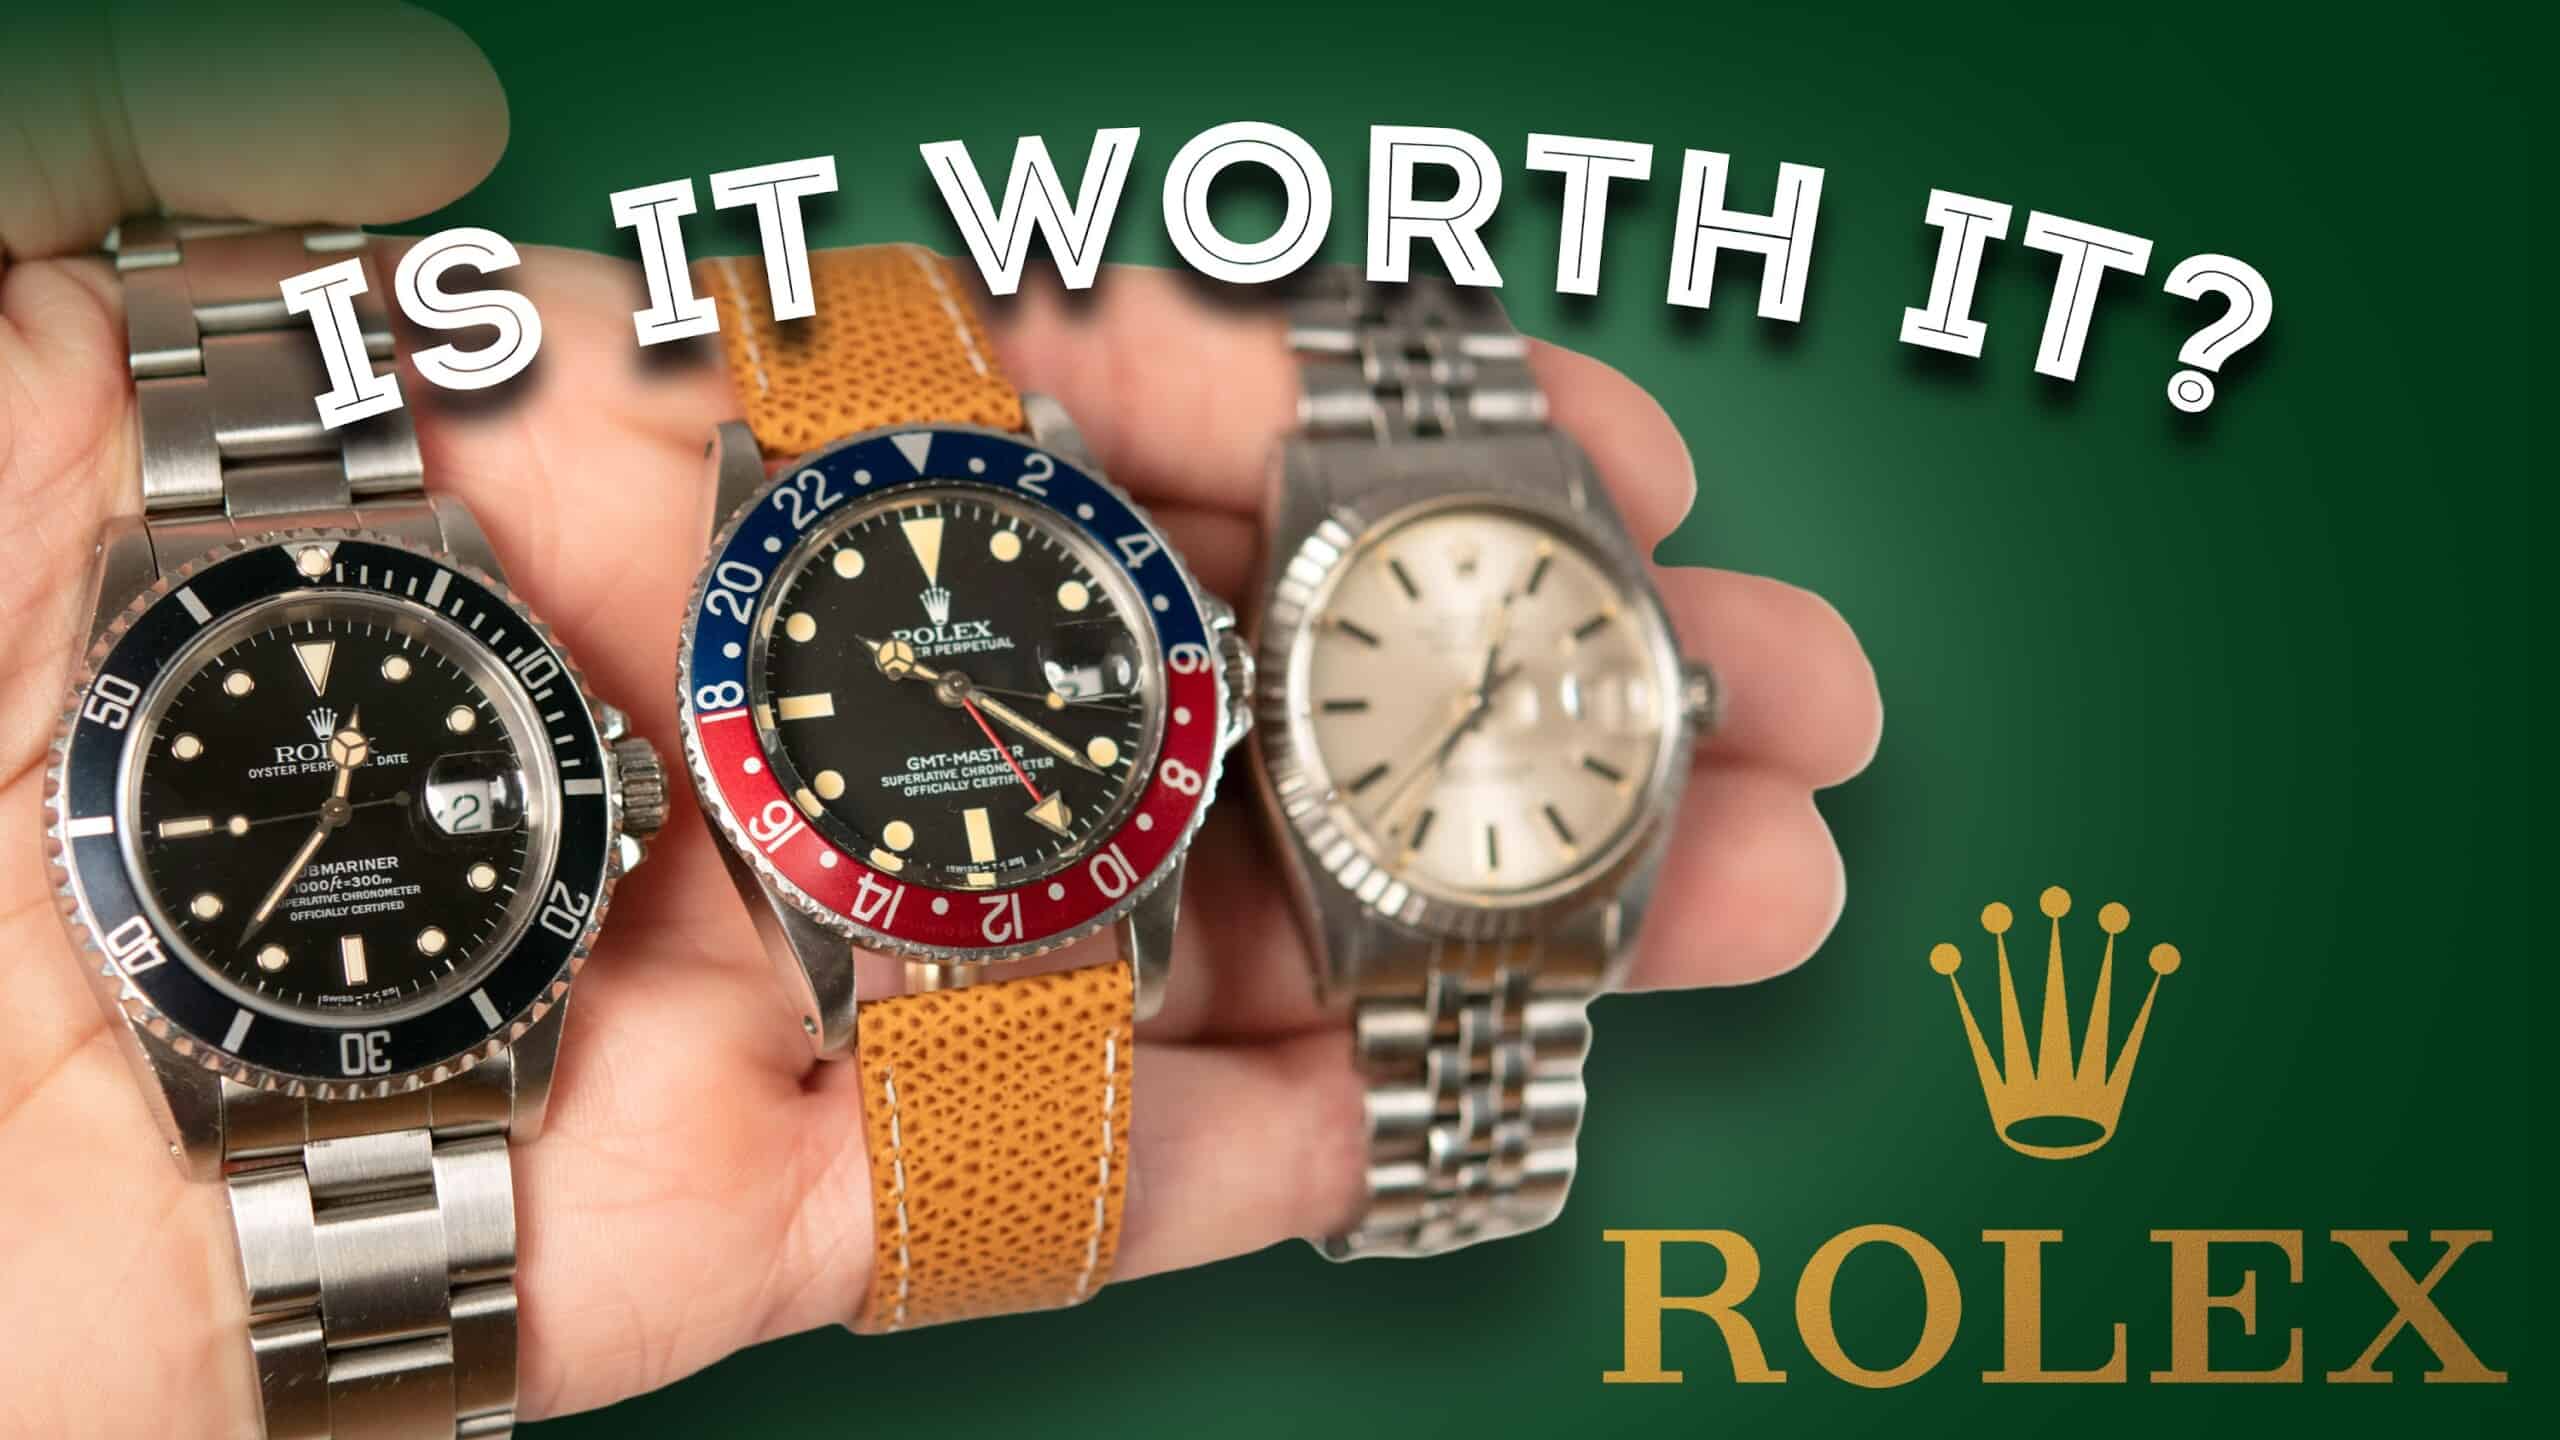 Sovereign jubilæum Skorpe Rolex Watches: Are They Worth It? Men's Watch Review - Datejust,  Submariner, GMT Master